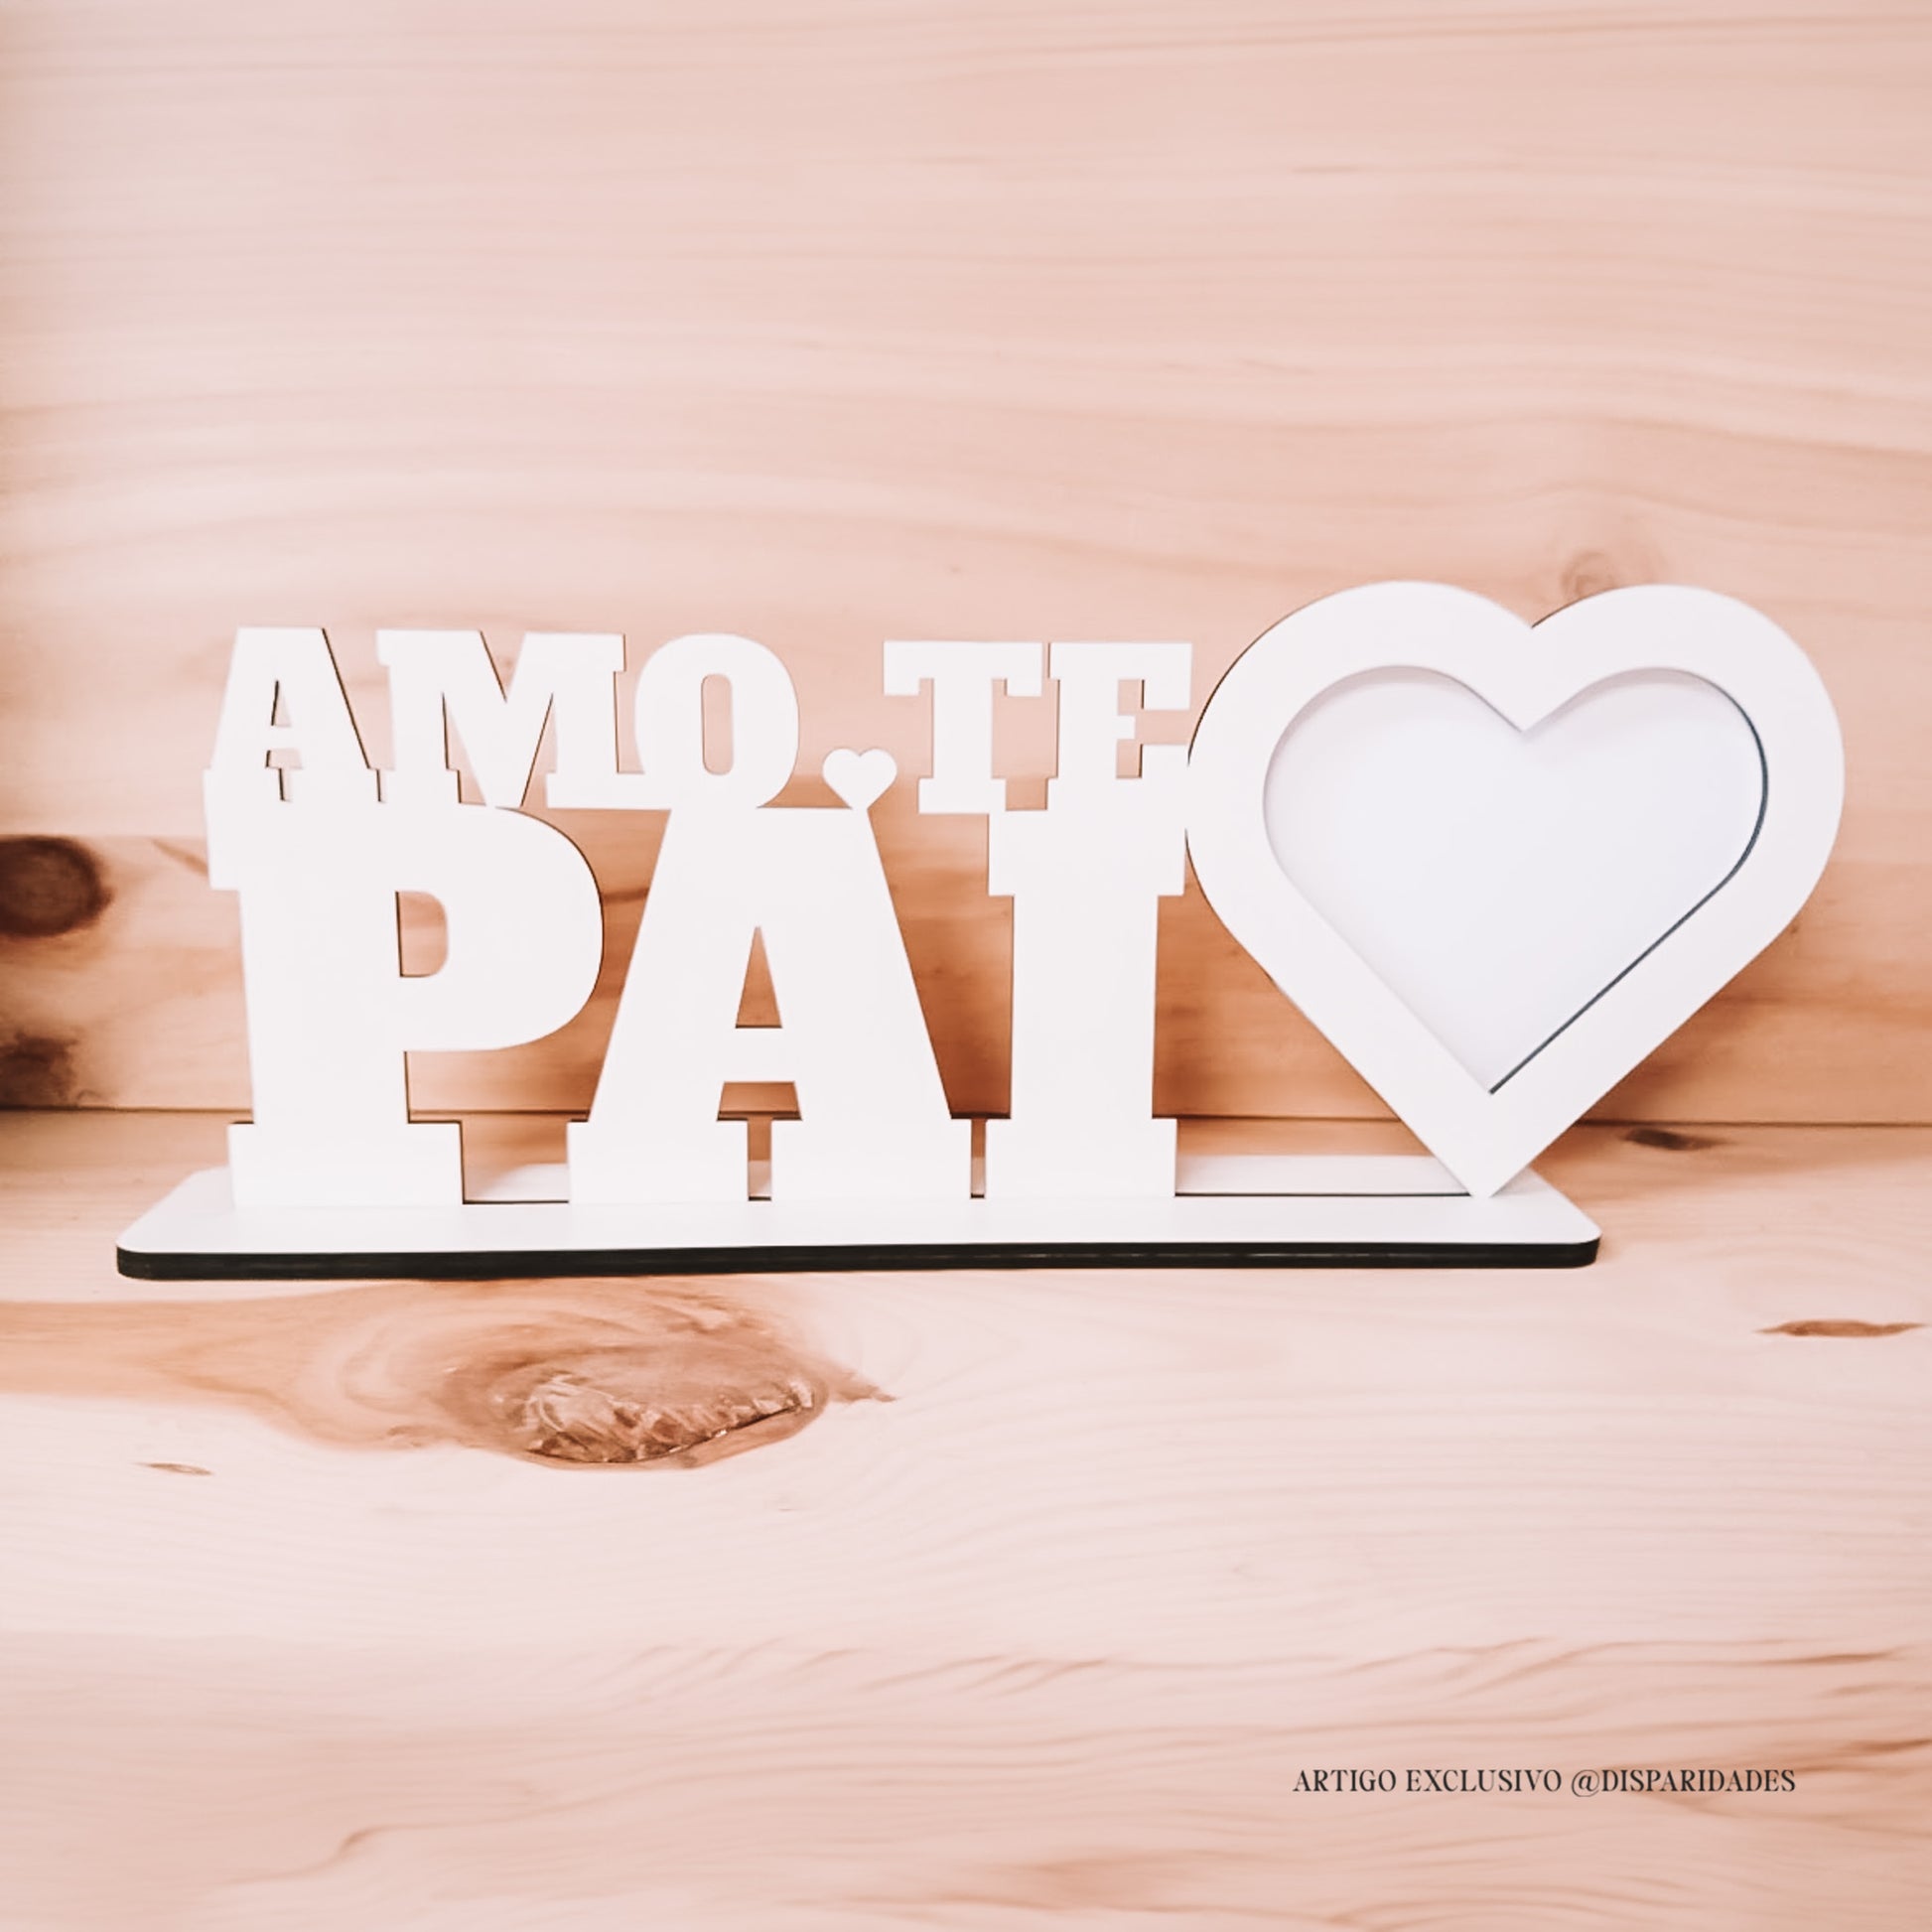 Moldura em branco com "AMO-TE PAI" e coração, sobre base branca, contrastando com fundo de madeira claro.